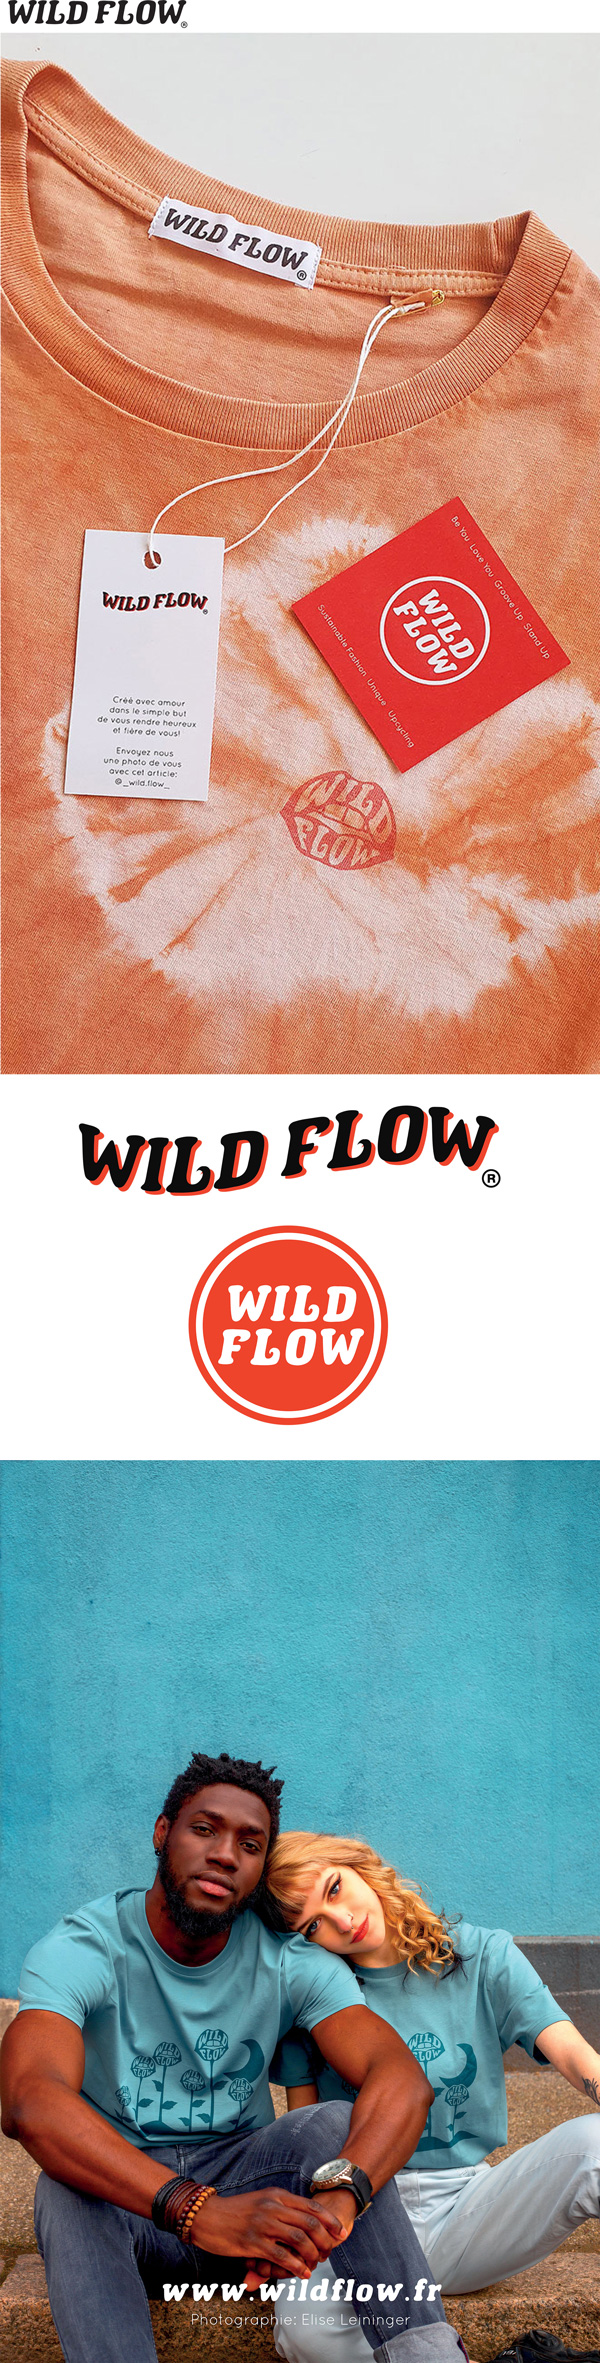 WILD-FLOW-identité-web